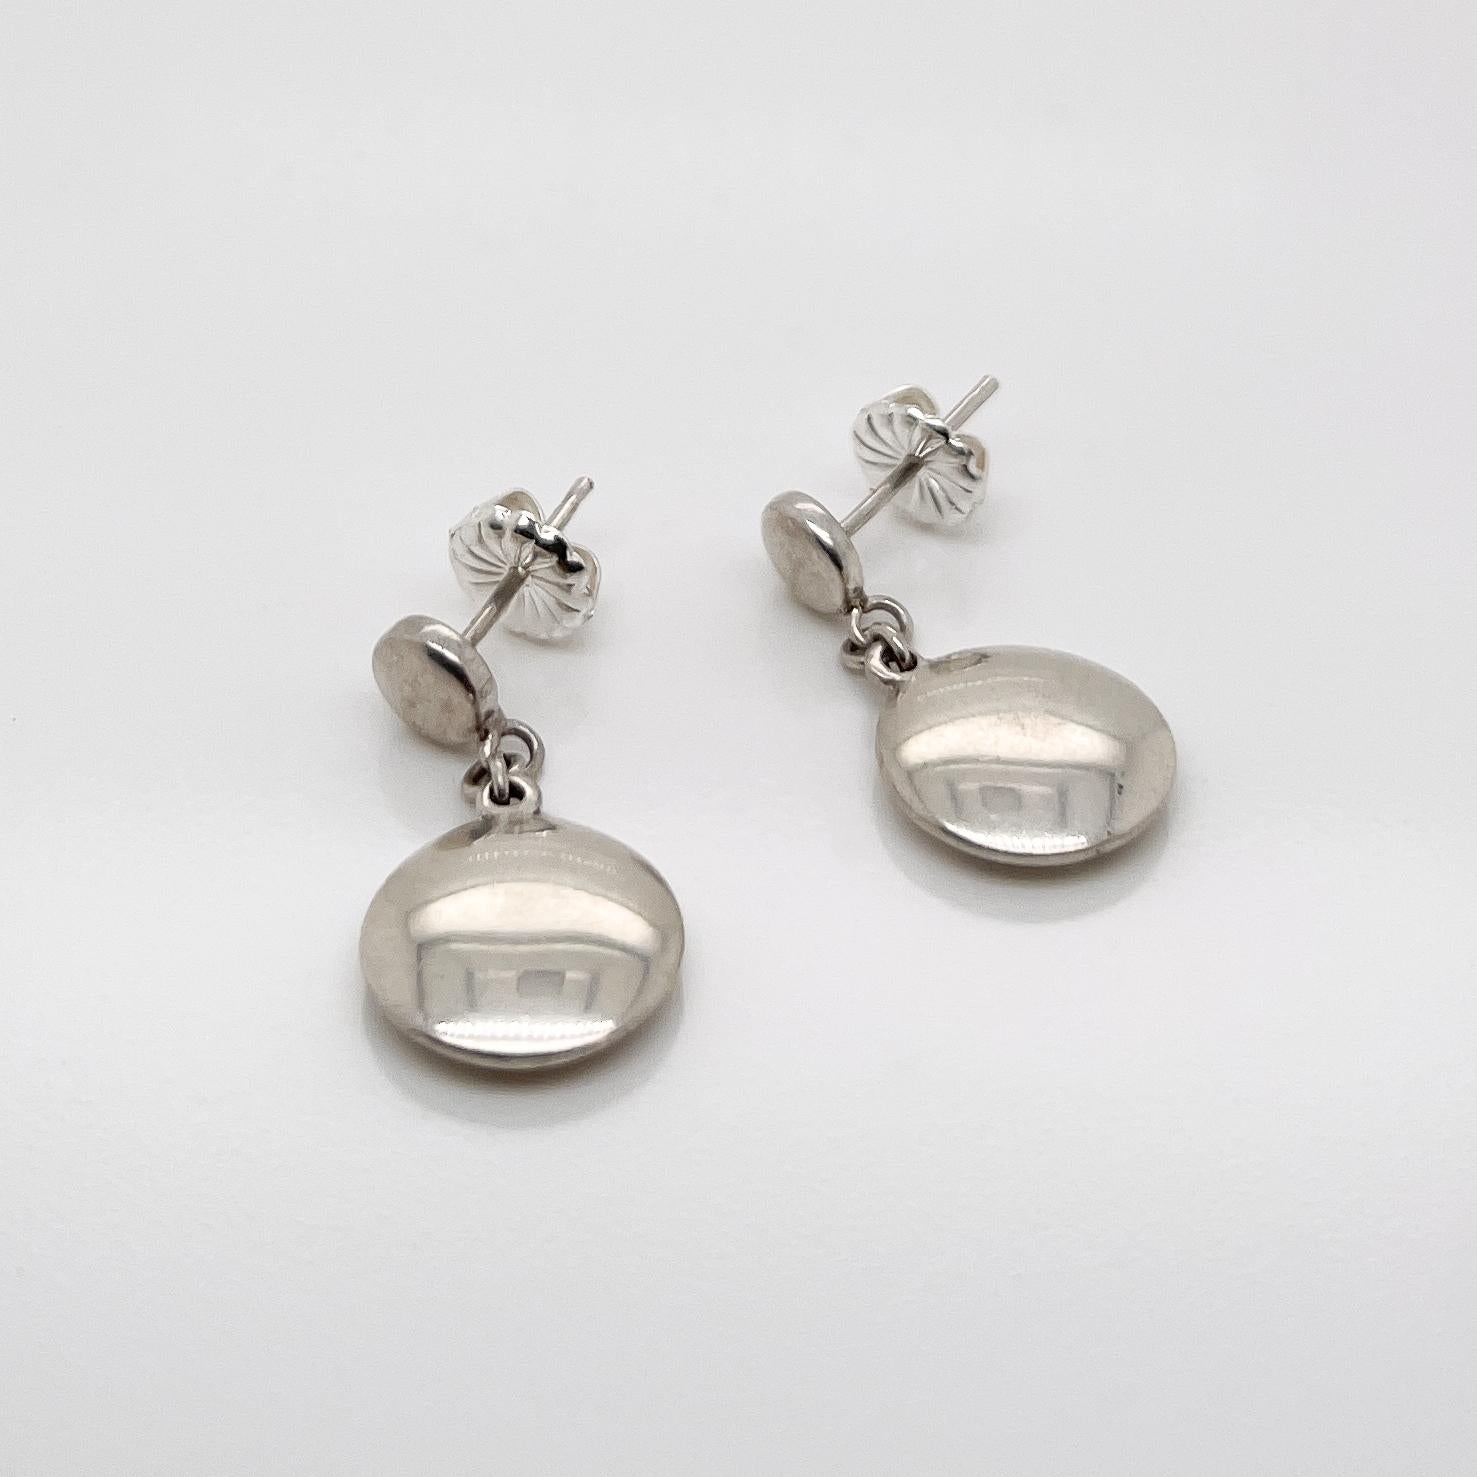 tiffany 925 earrings